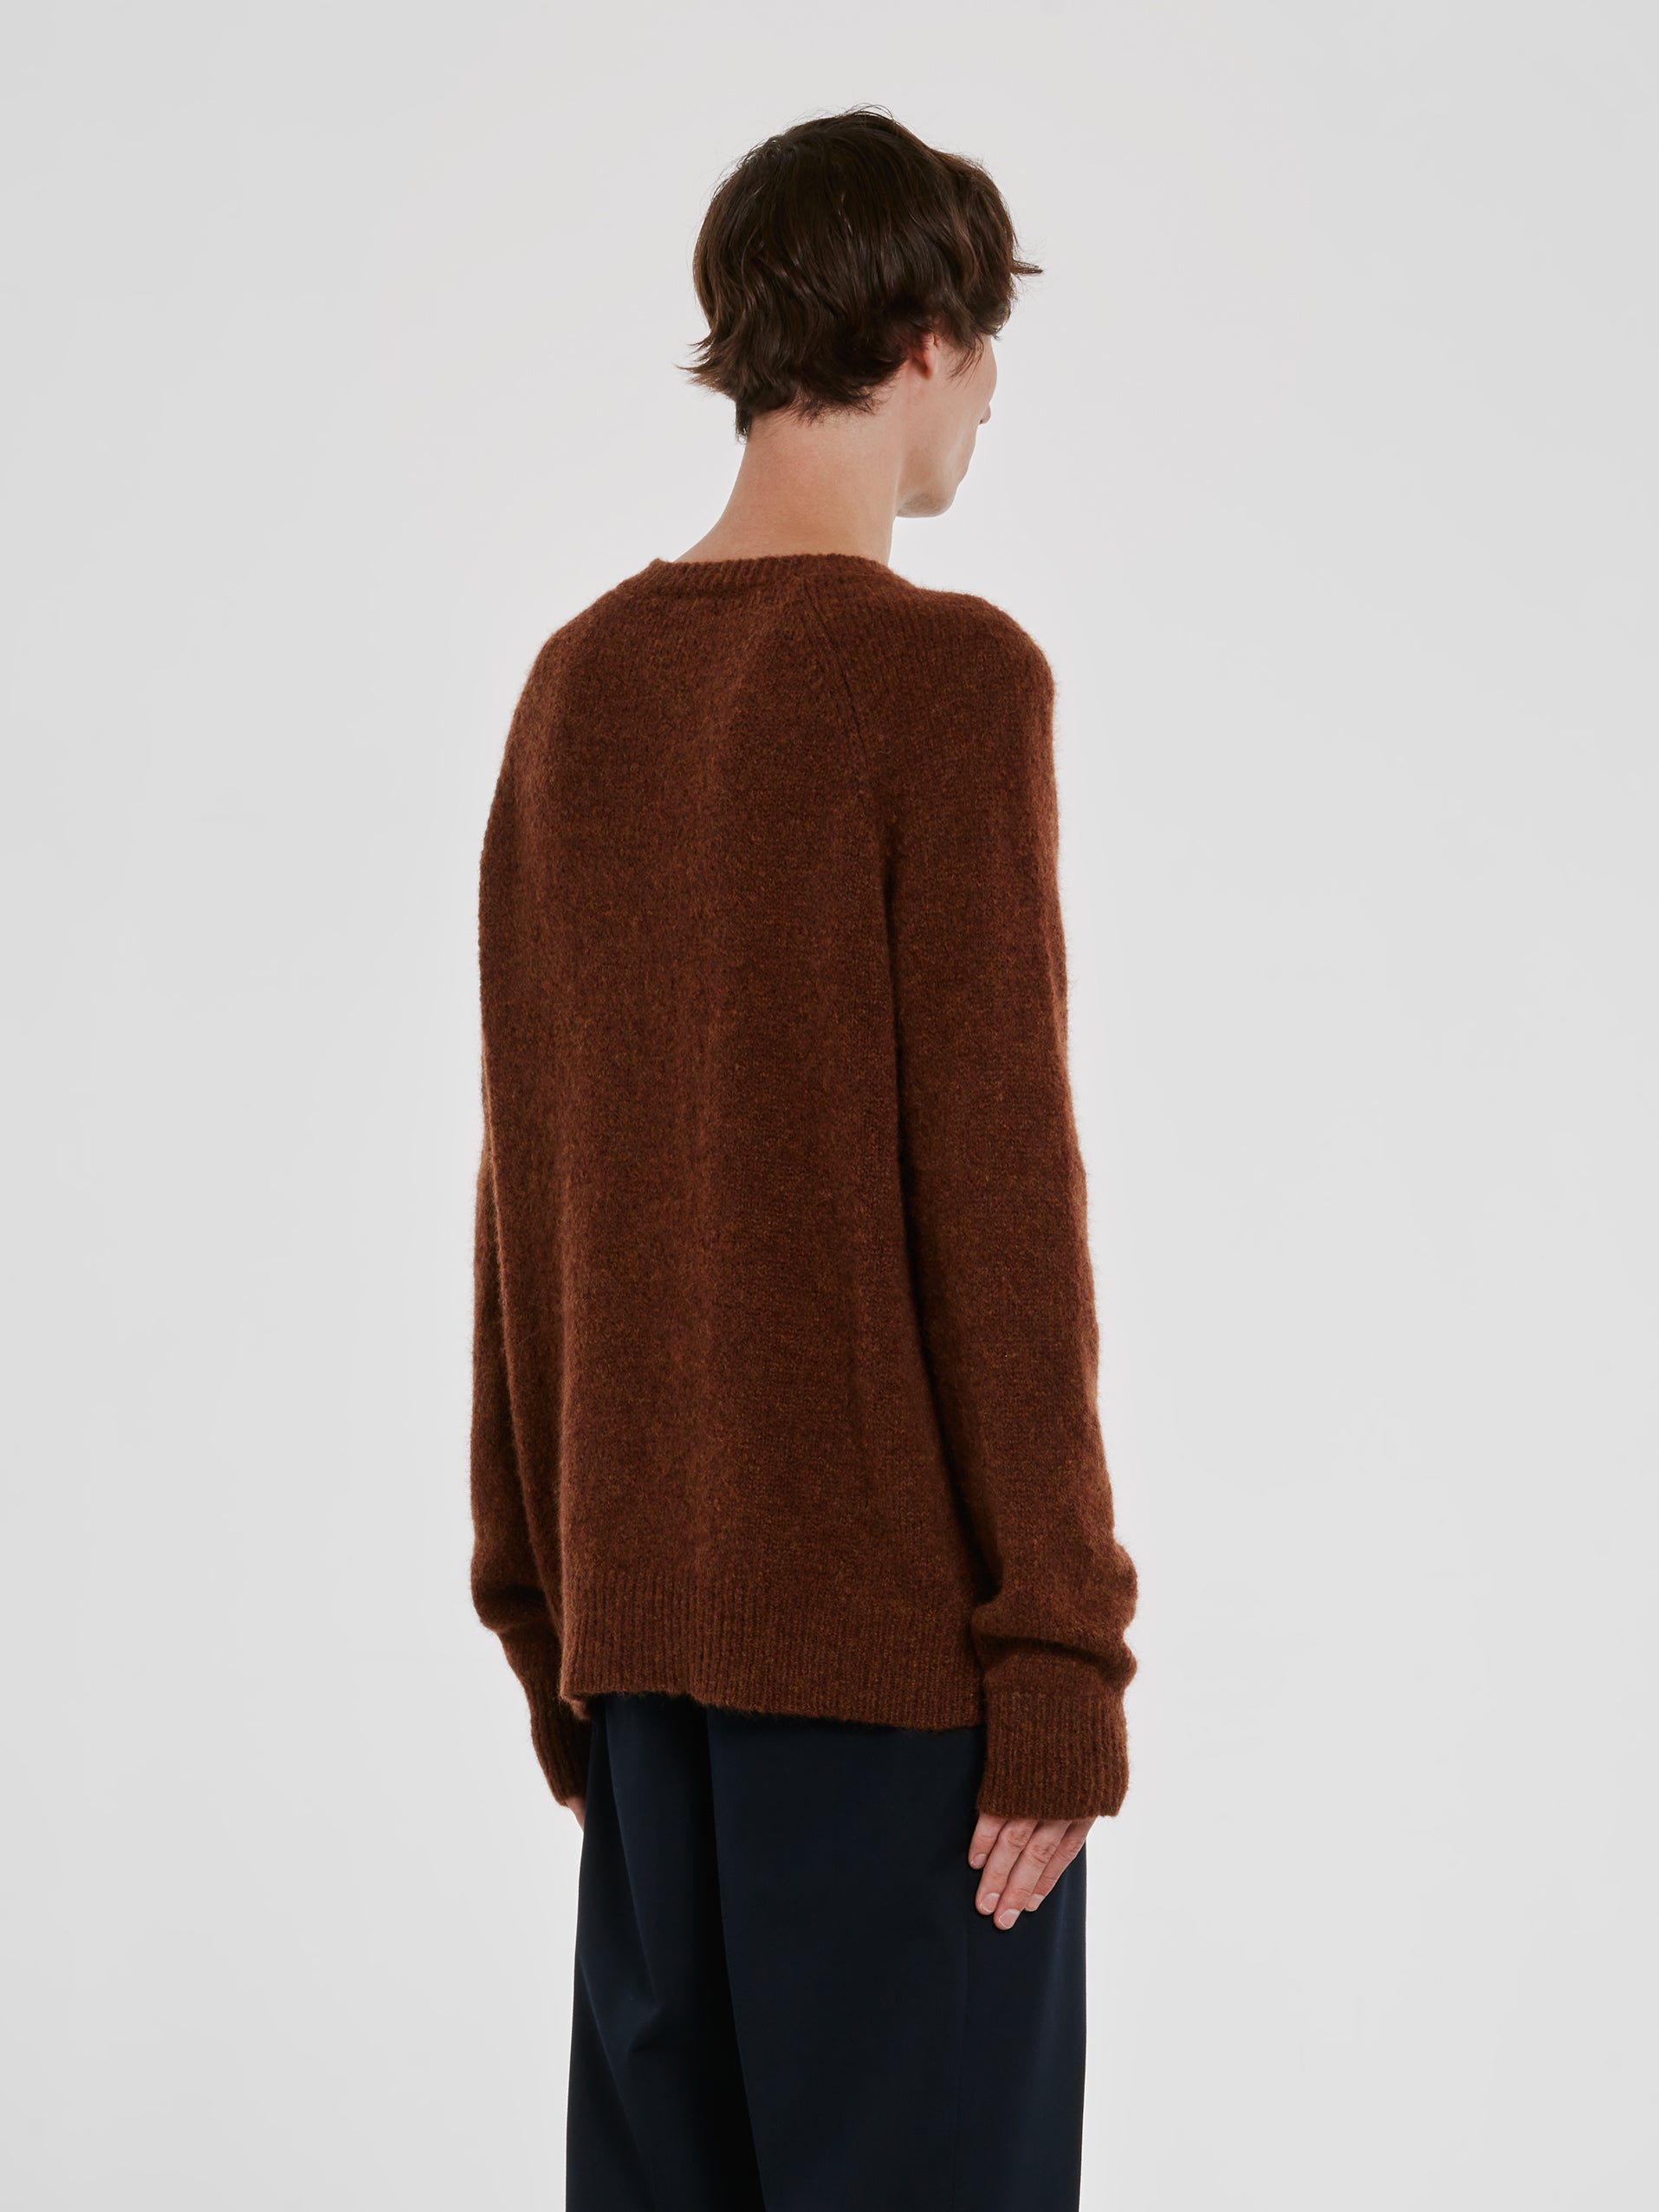 Dries Van Noten - Men’s Wool Sweater - (Brown) view 3